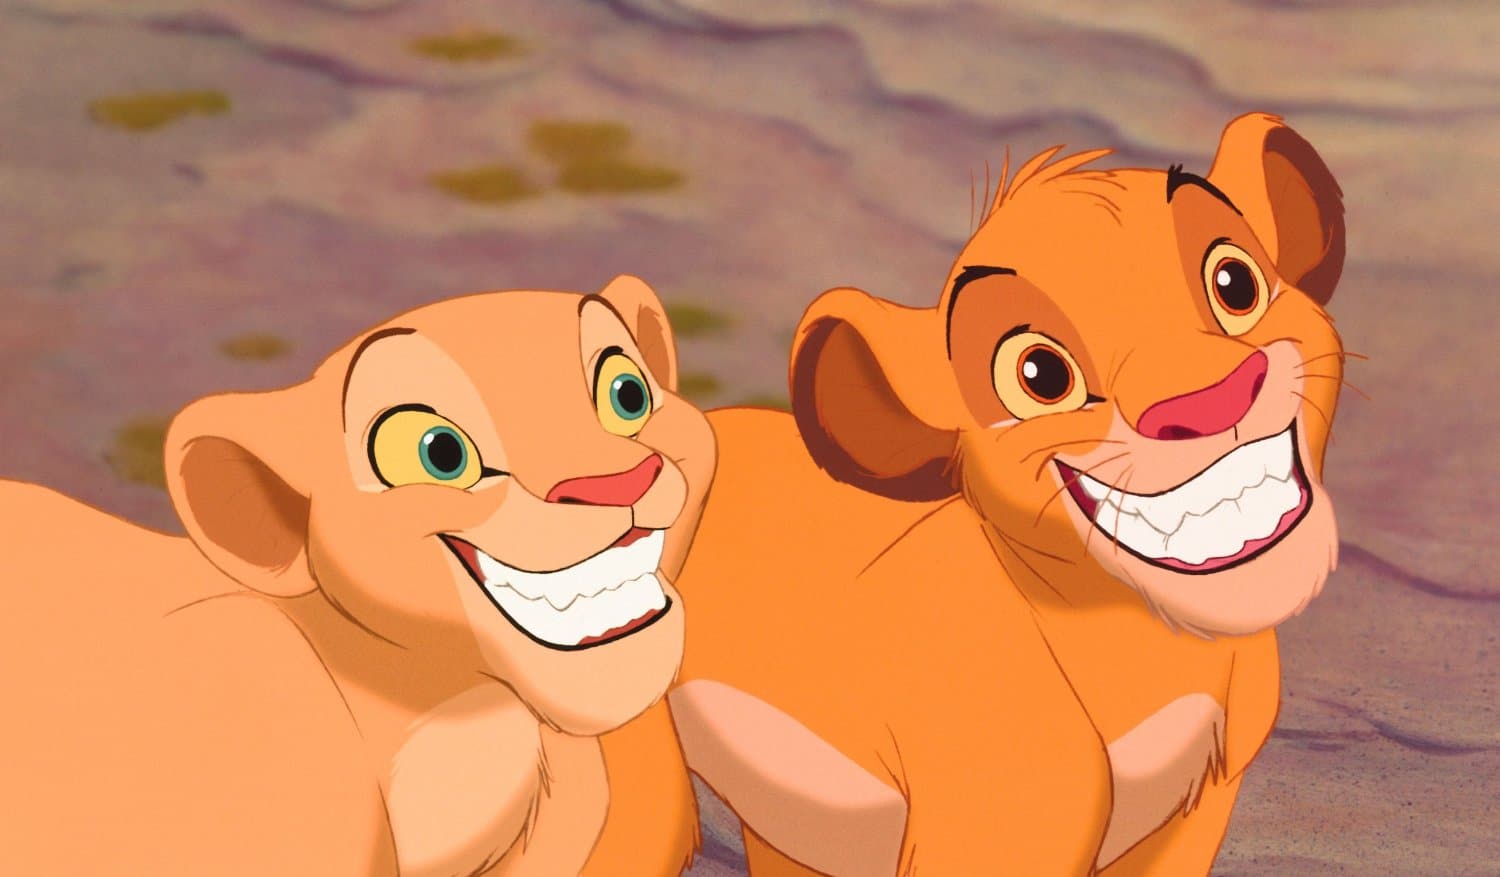 le roi lion Nala et Simba heureux de retrouver leurs aventures une fois de plus sur grand écran !